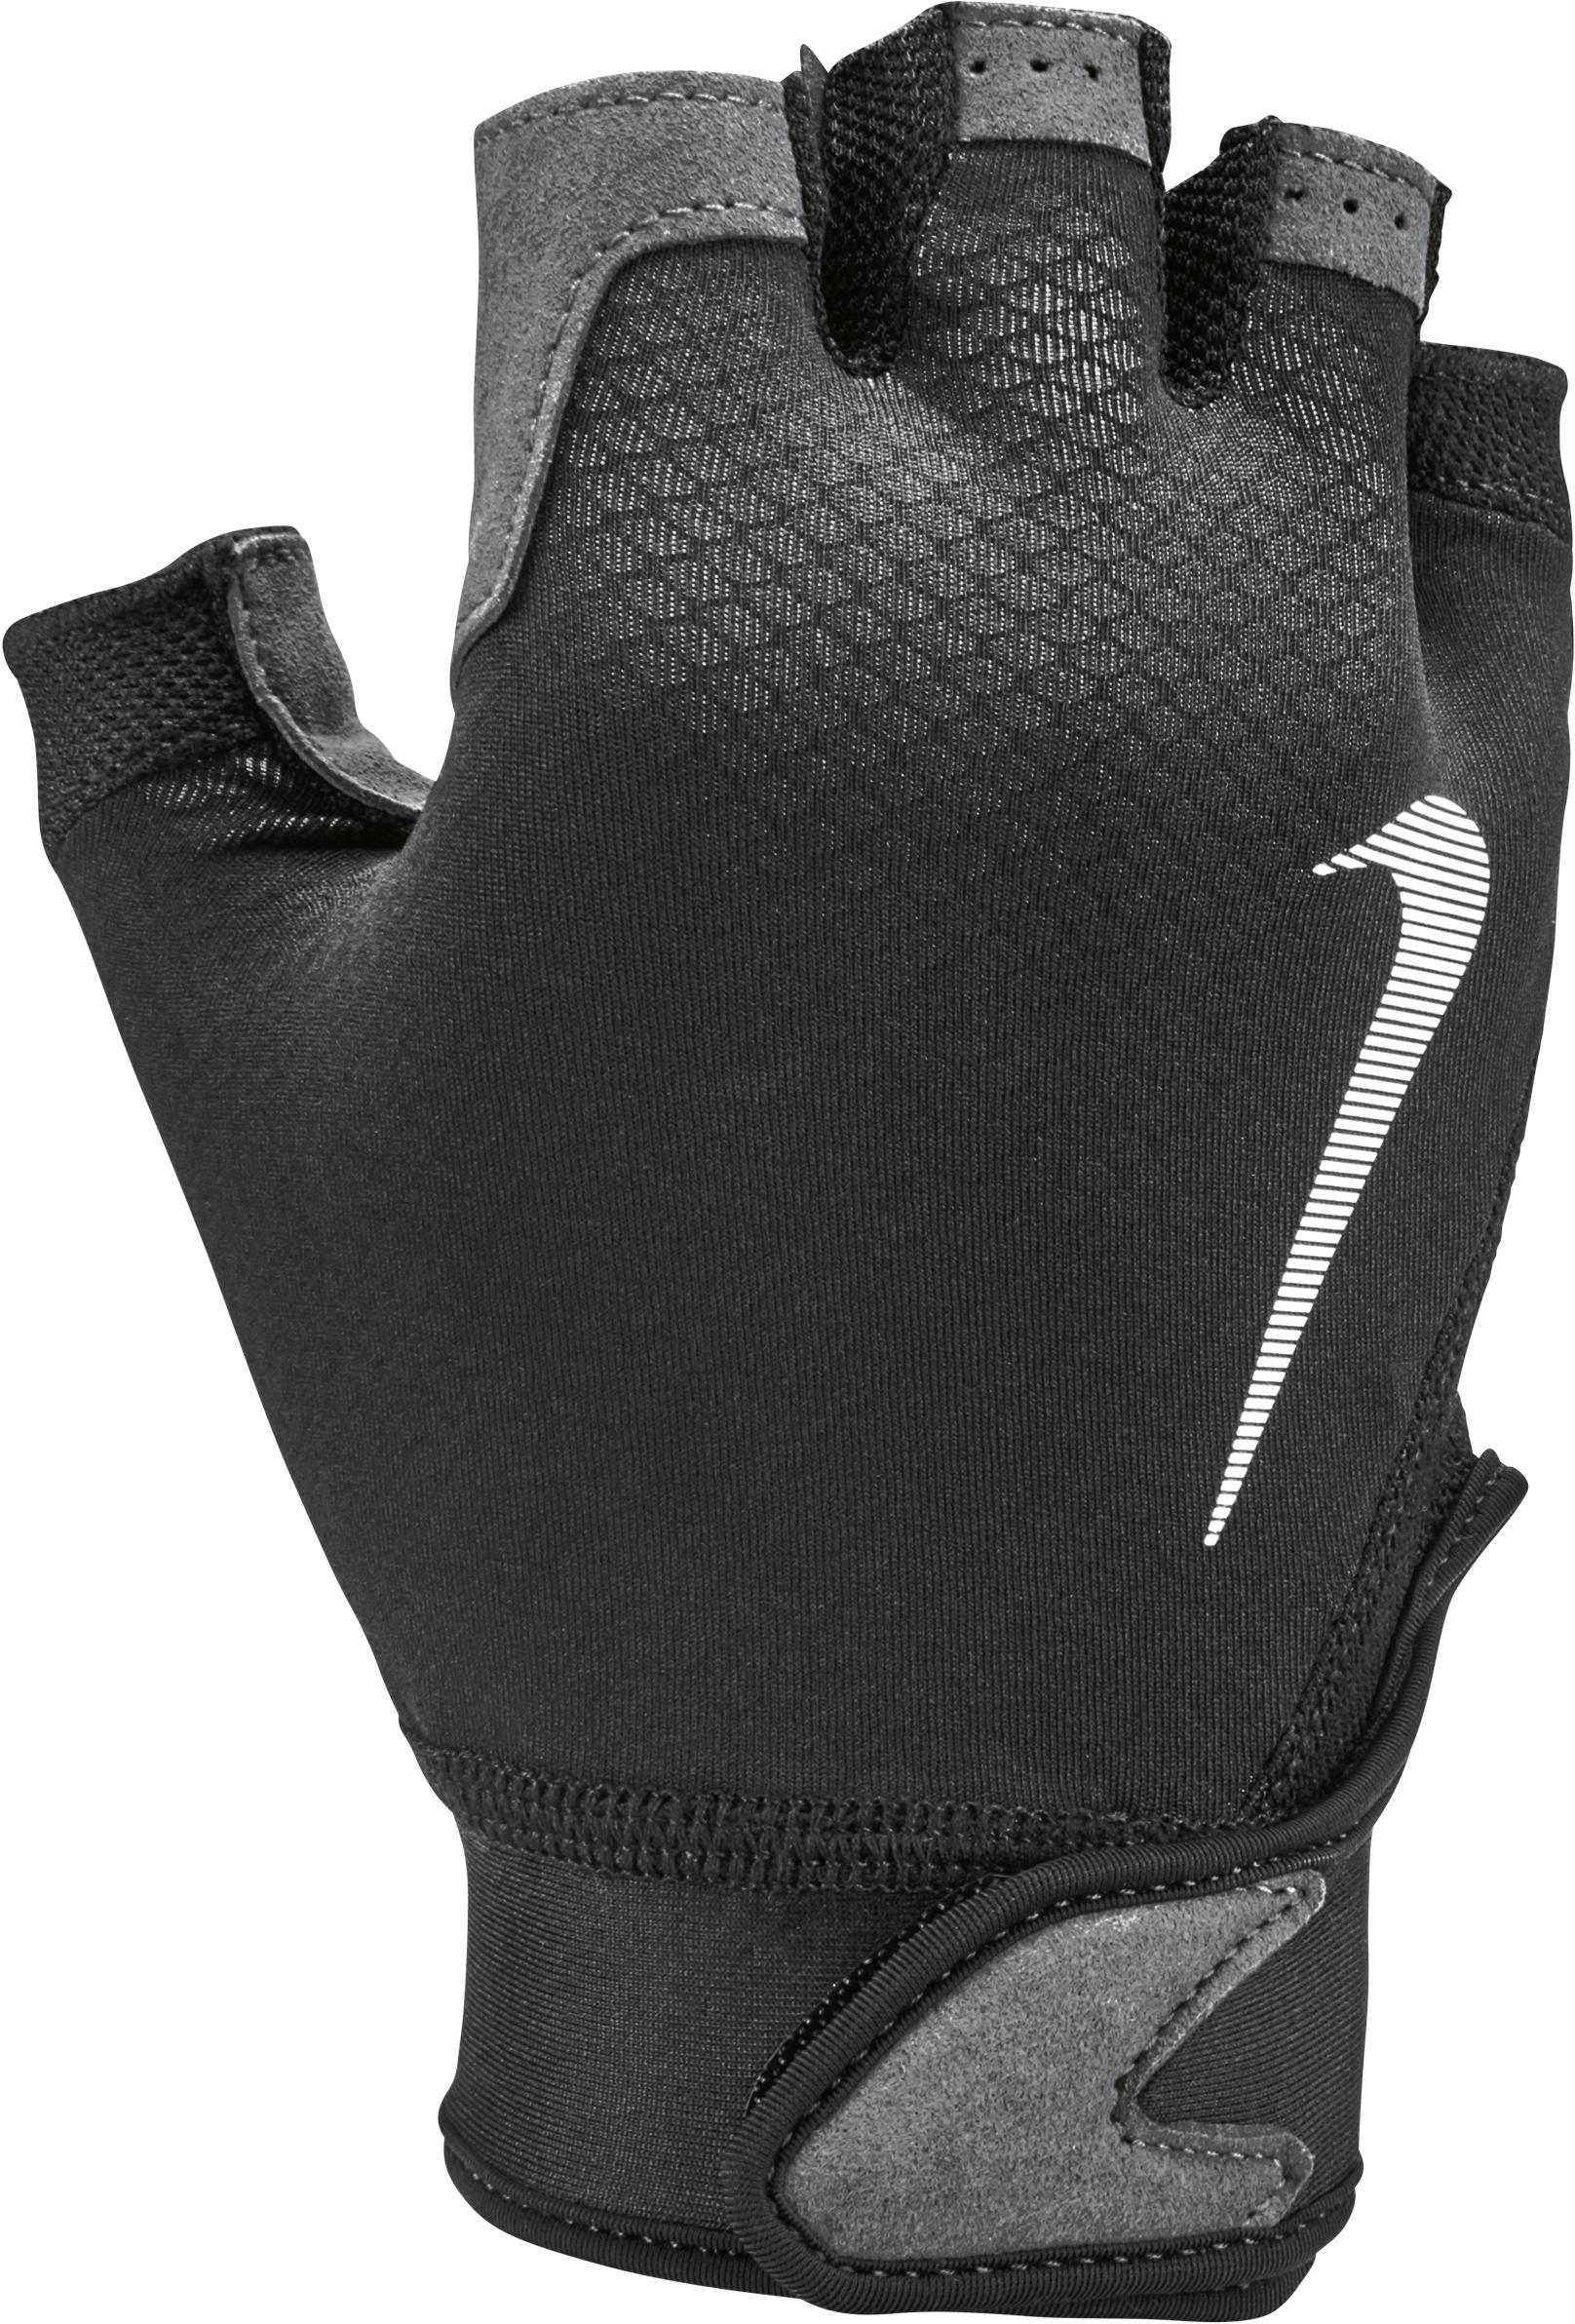 Nike Ultimate Fitness Gloves - Black/volt/white